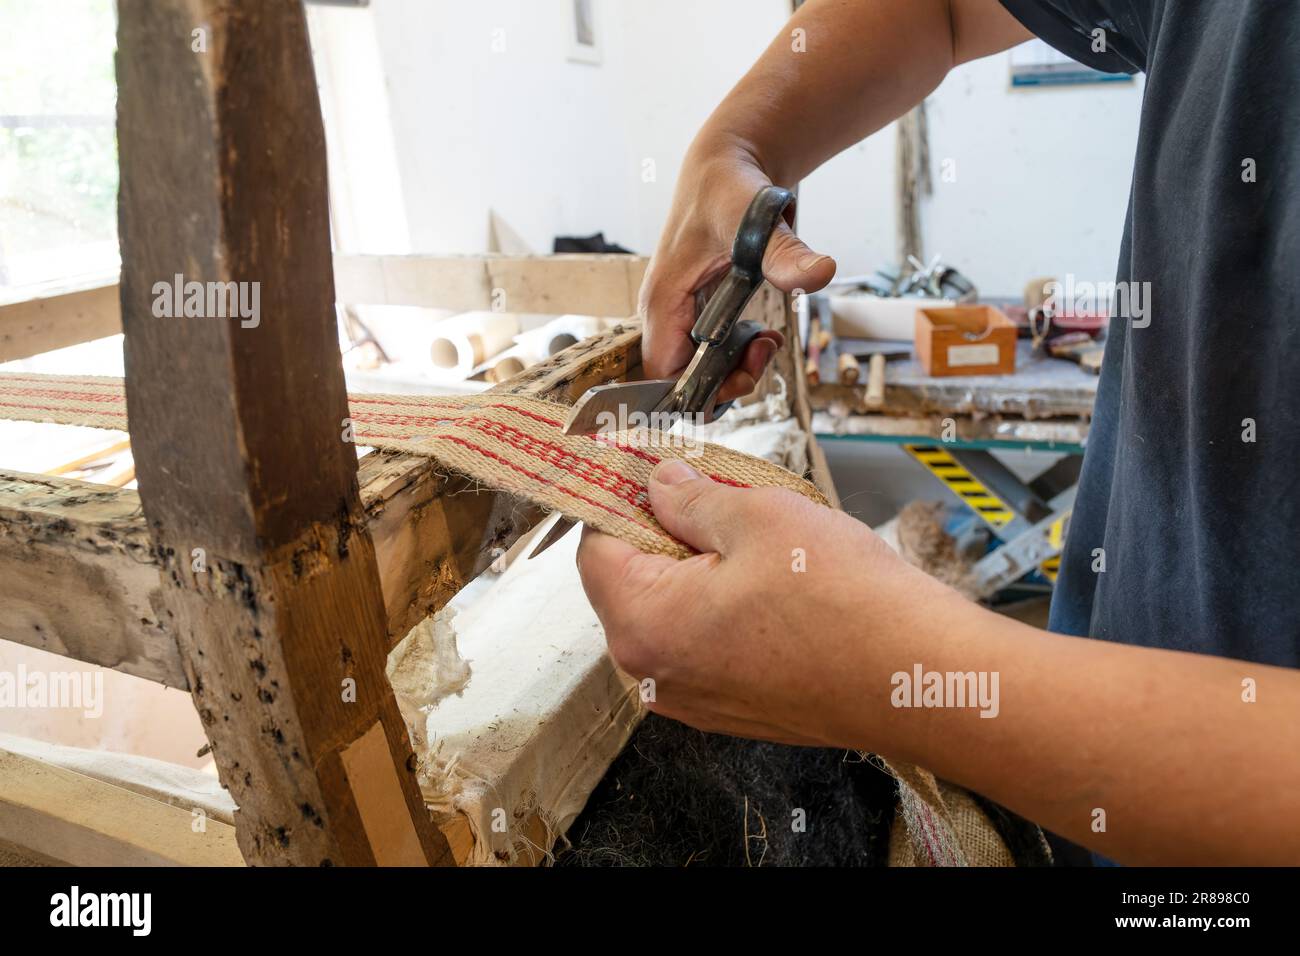 Un bourrier aux compétences artisanales traditionnelles raccourcit une nouvelle sangle sur une ancienne chaise avec des ciseaux dans son atelier, un espace de copie, un focus sélectionné, une profondeur étroite Banque D'Images